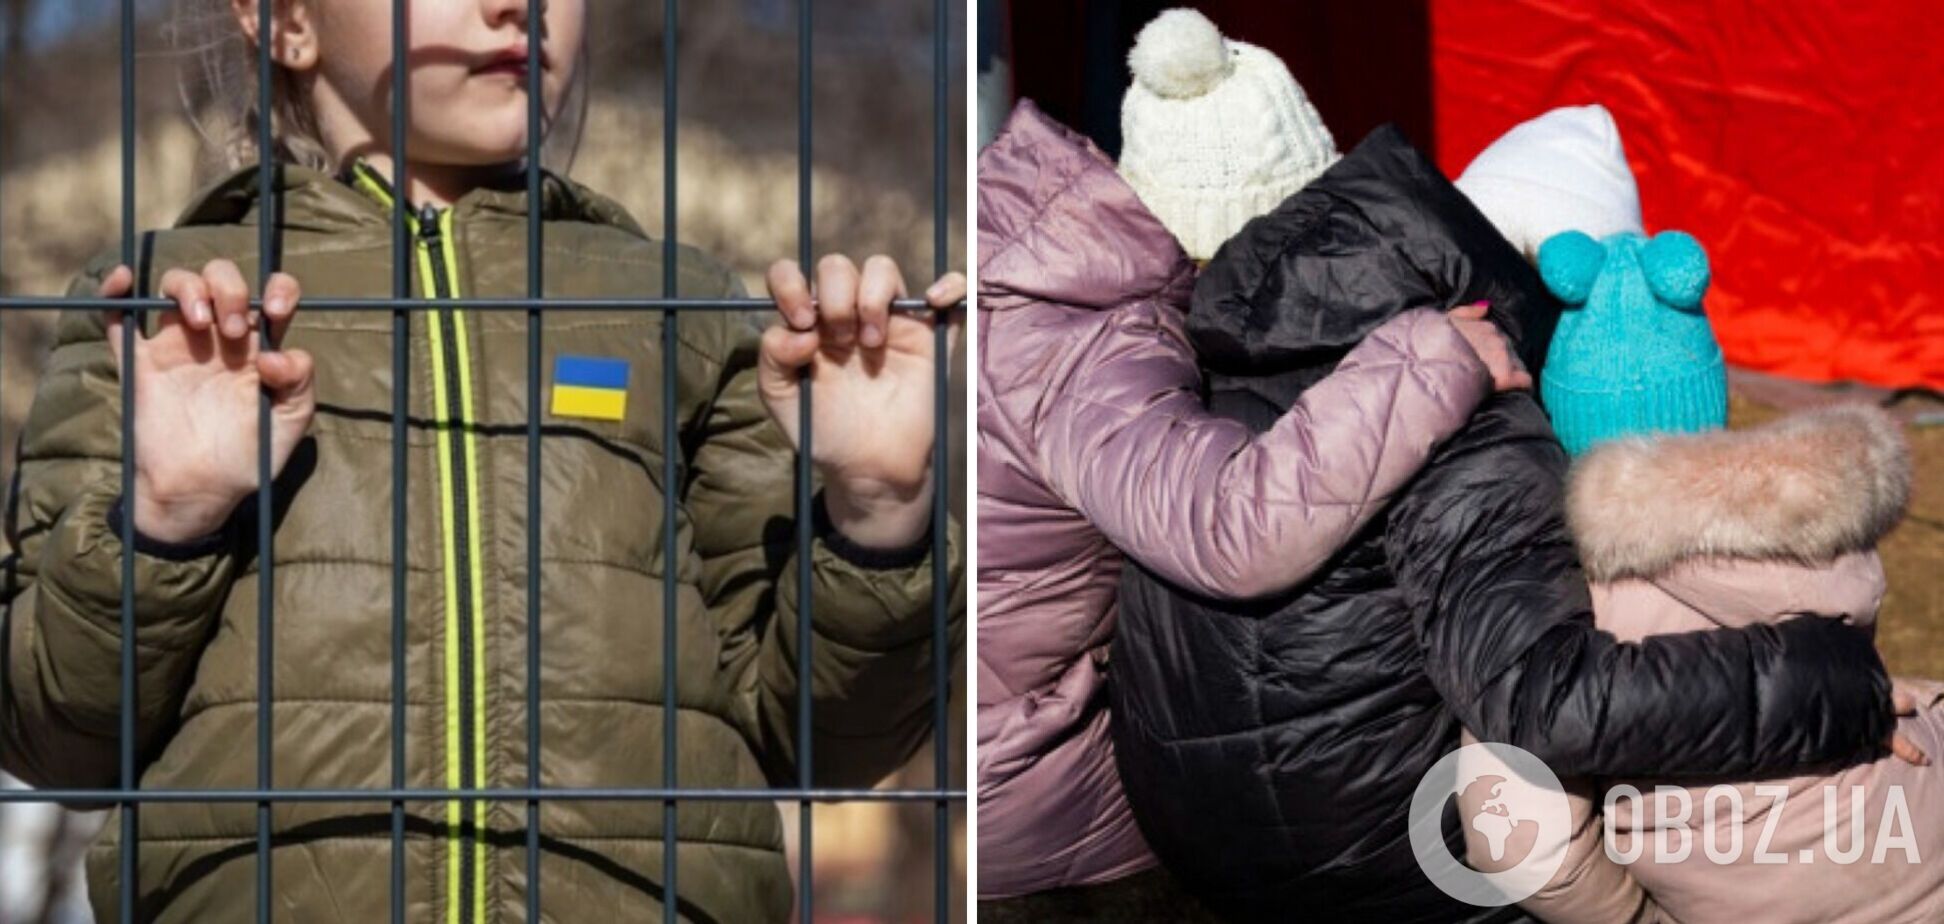 'Преступление, о котором нельзя молчать': депутаты Рады обратились в ООН из-за принудительной депортации Россией детей из Украины